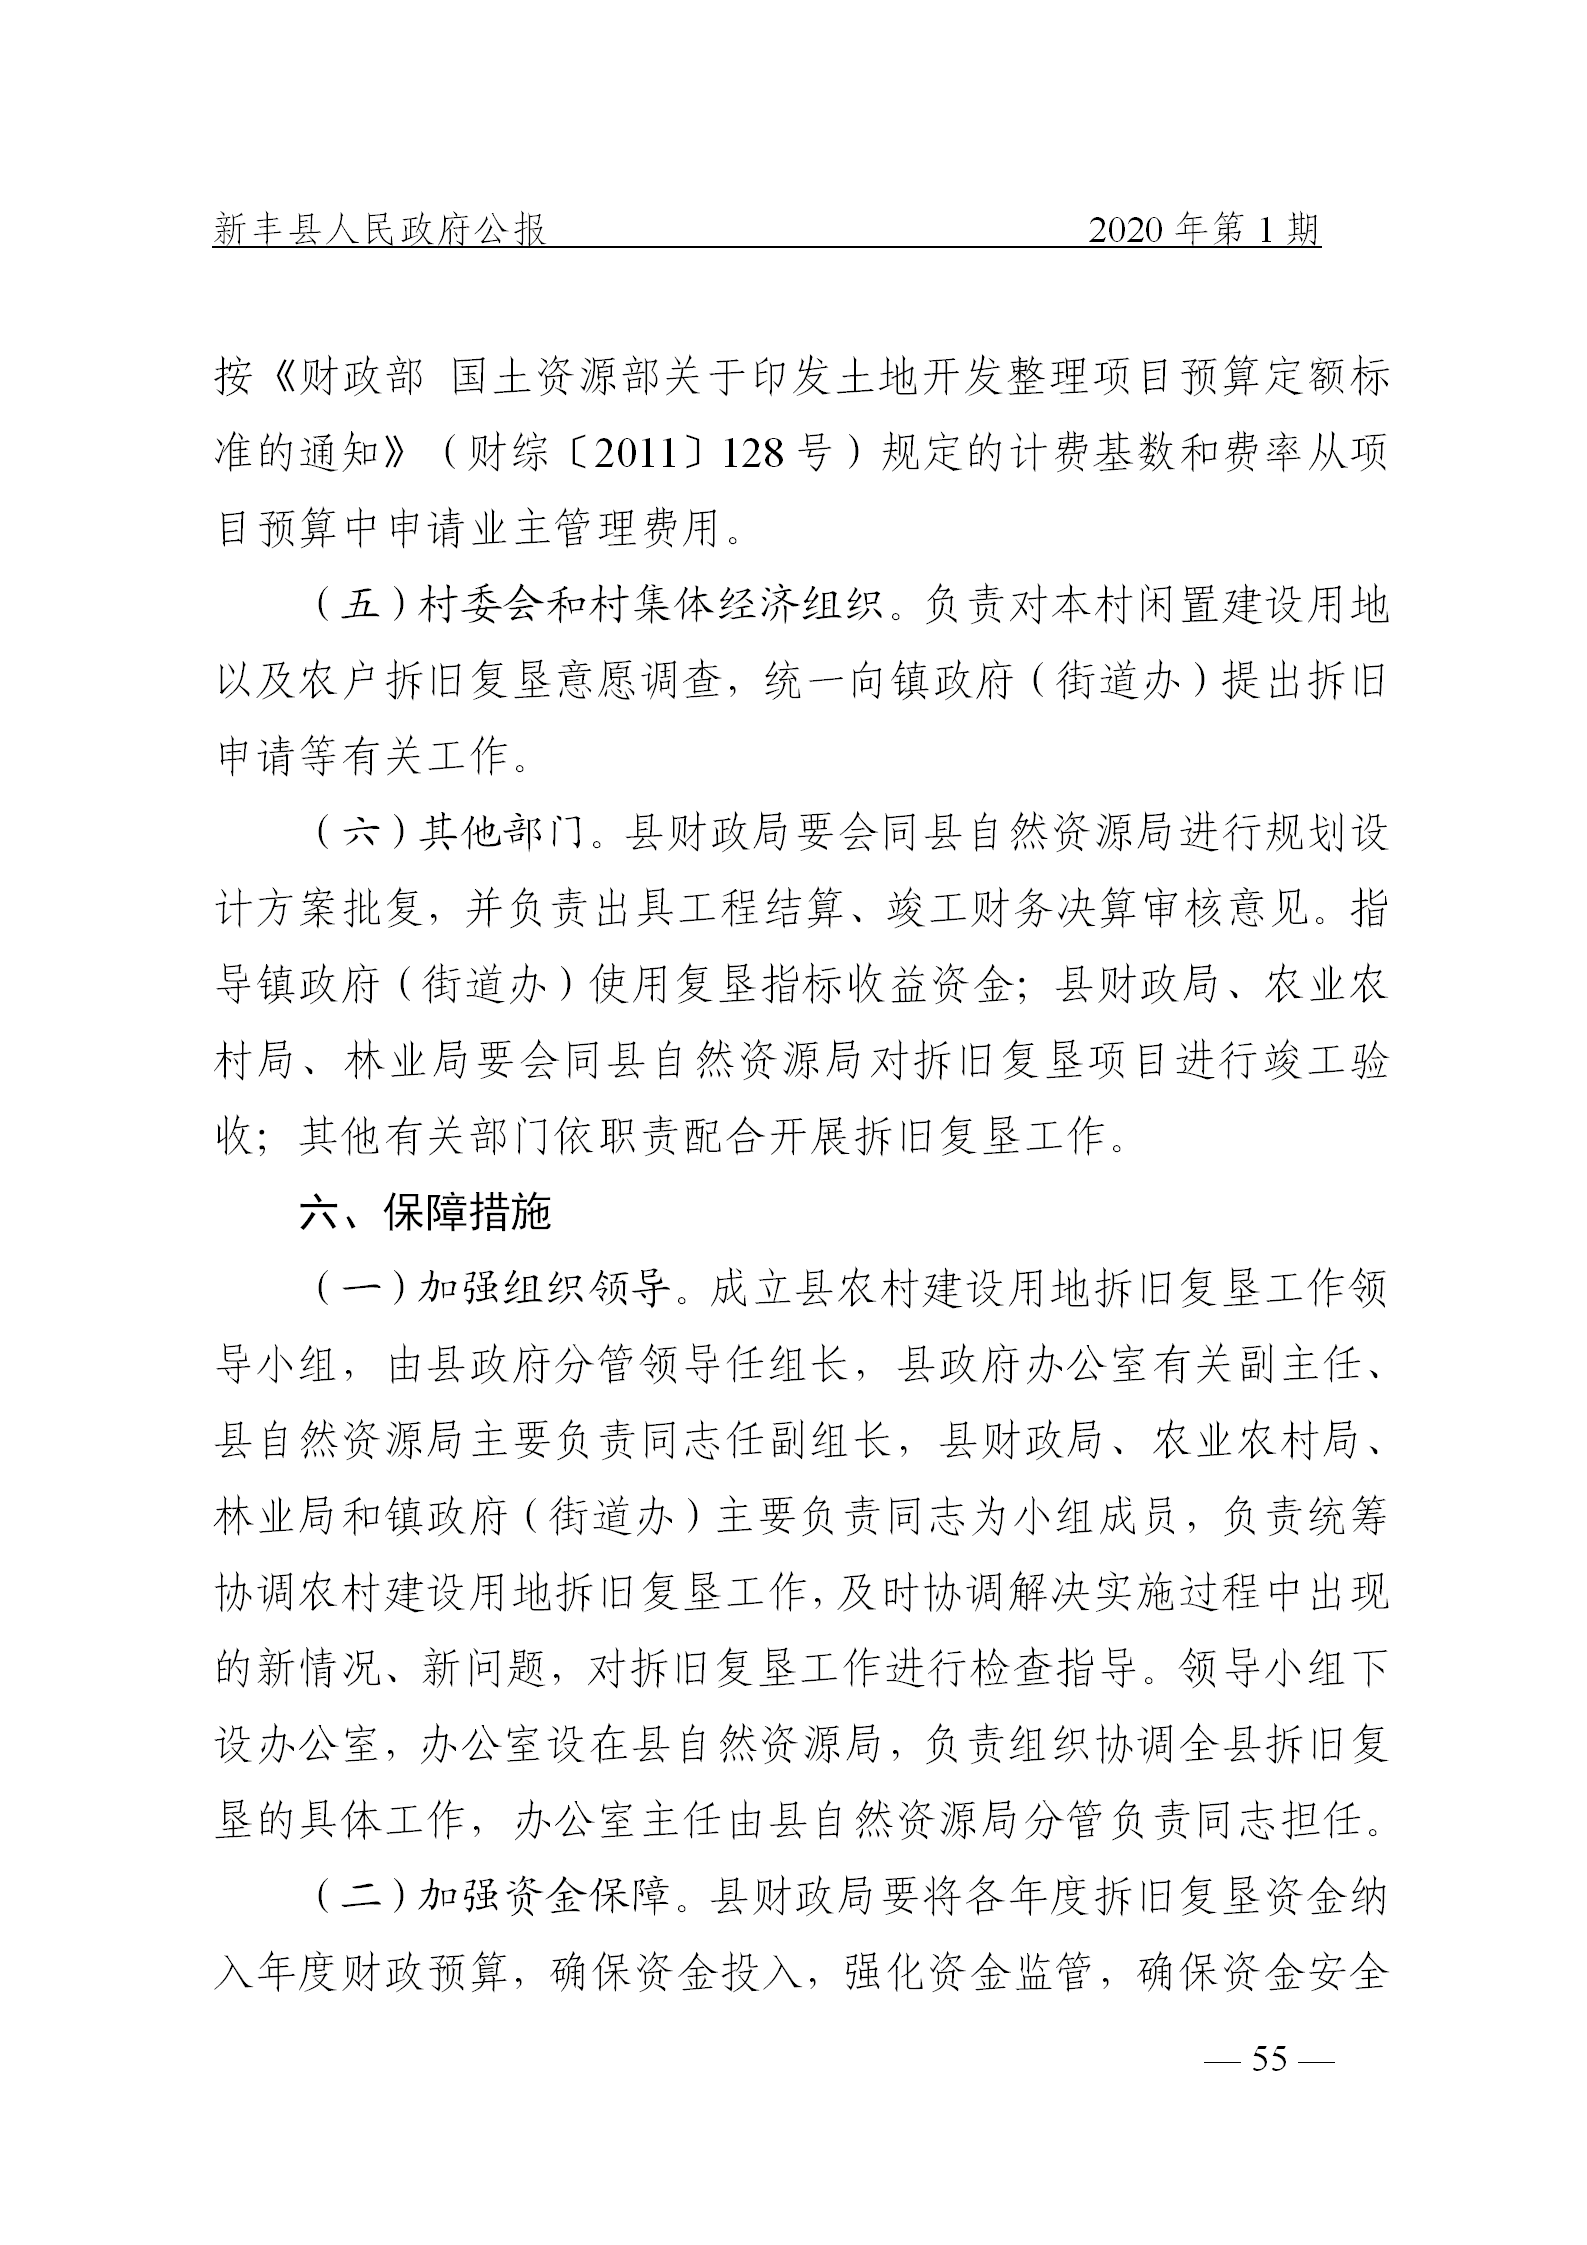 《新丰县人民政府公报》2020年第1期(1)_55.png